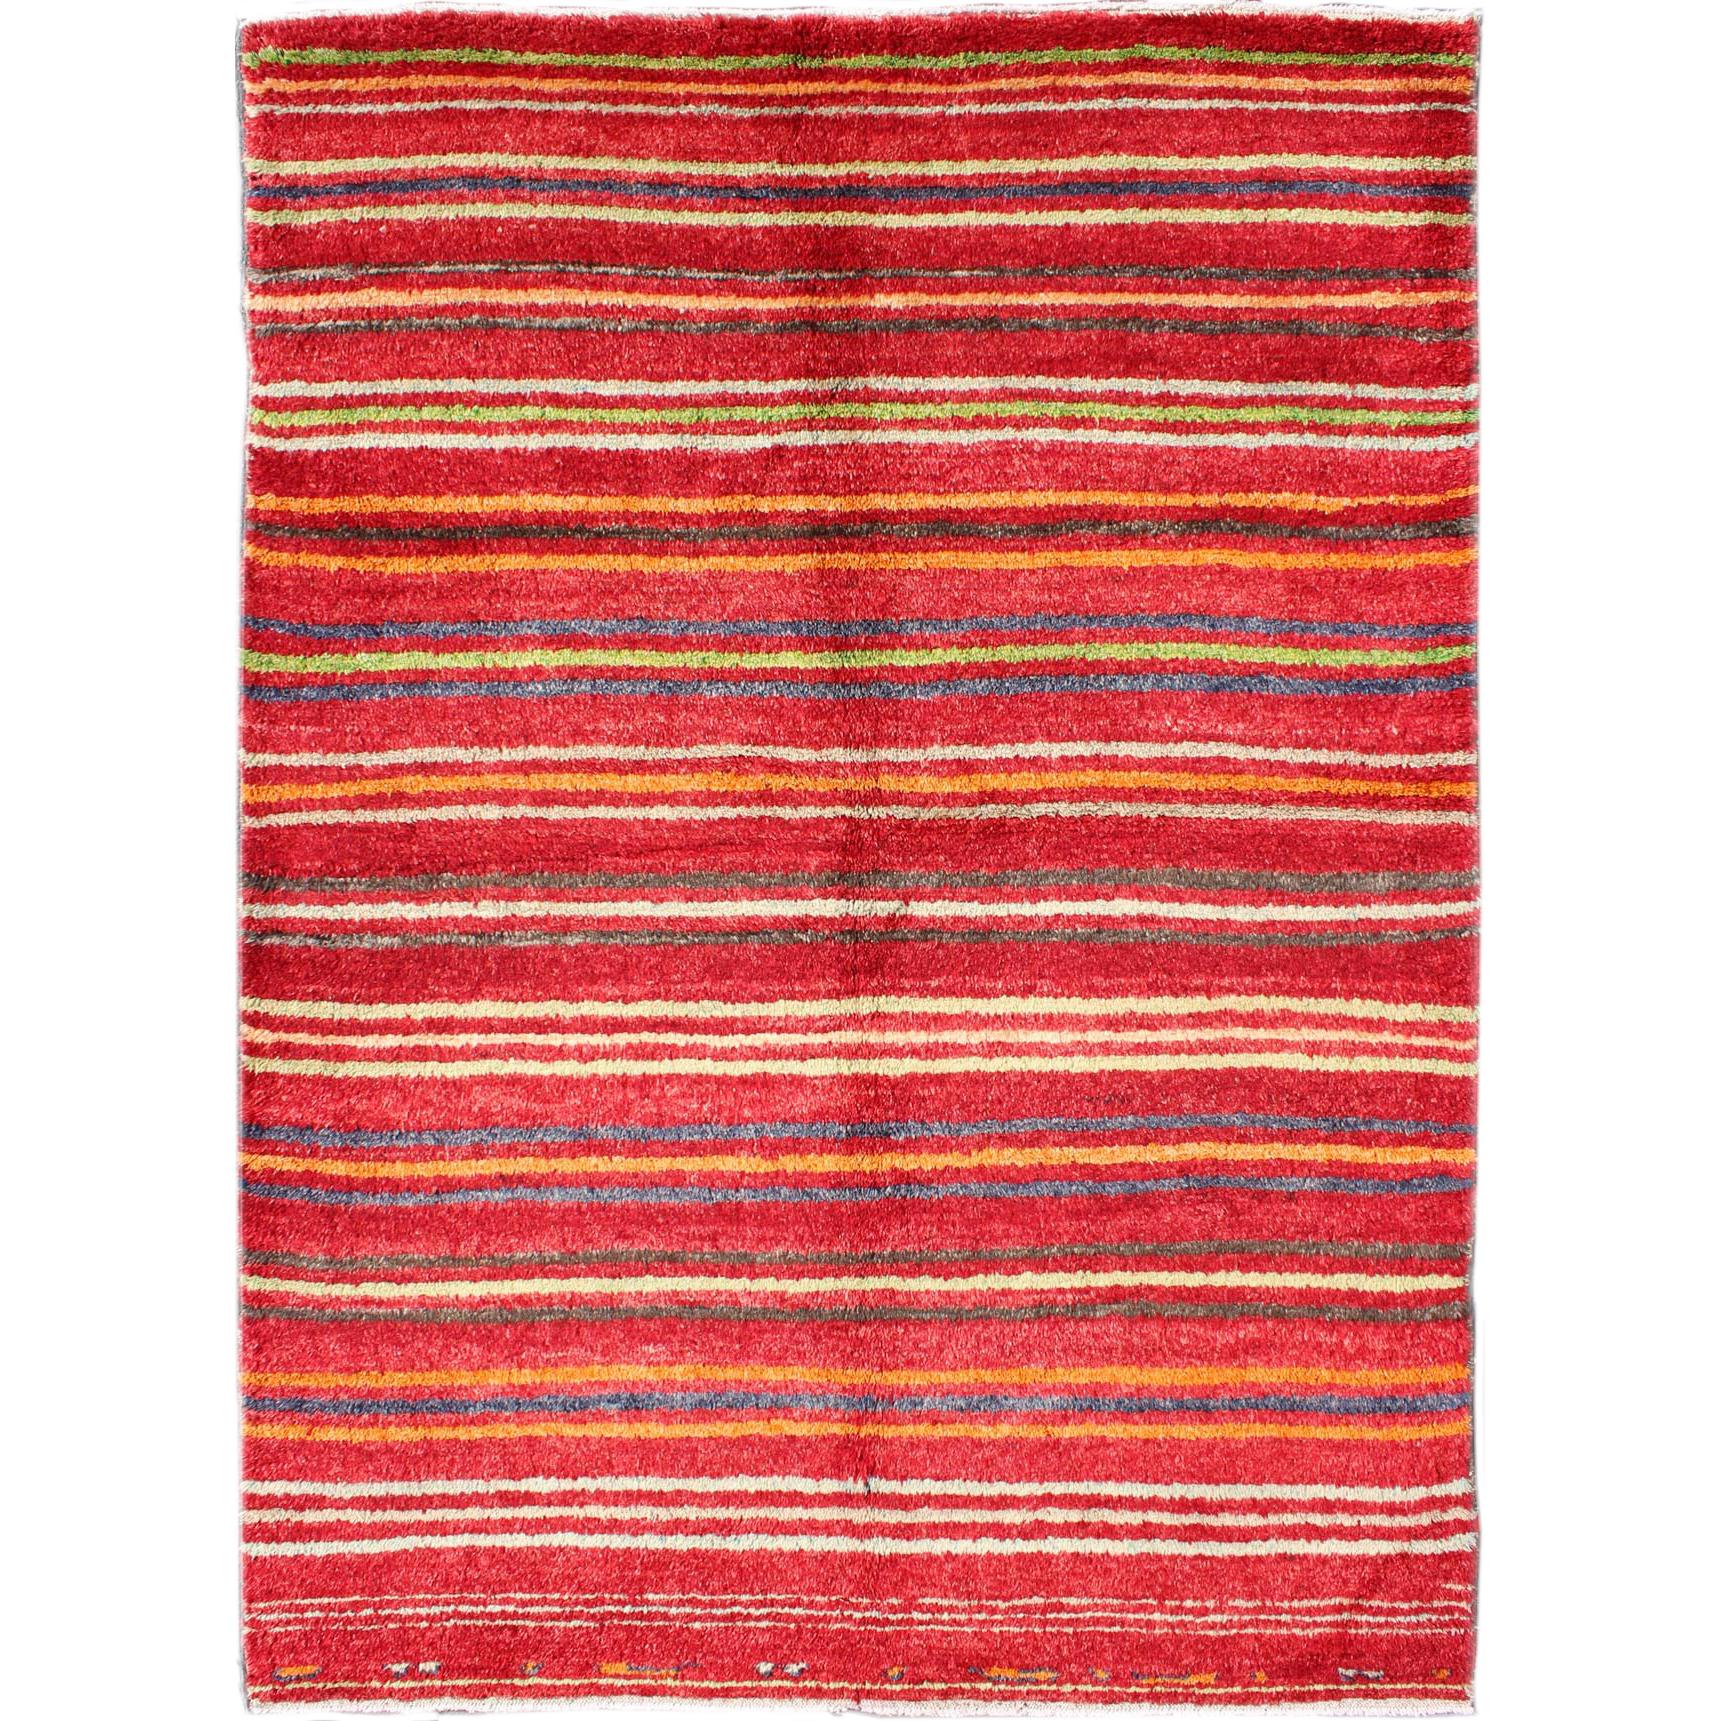 Türkischer Tulu-Teppich mit buntem gestreiftem Muster in Rot, Orange, Blau, Grün